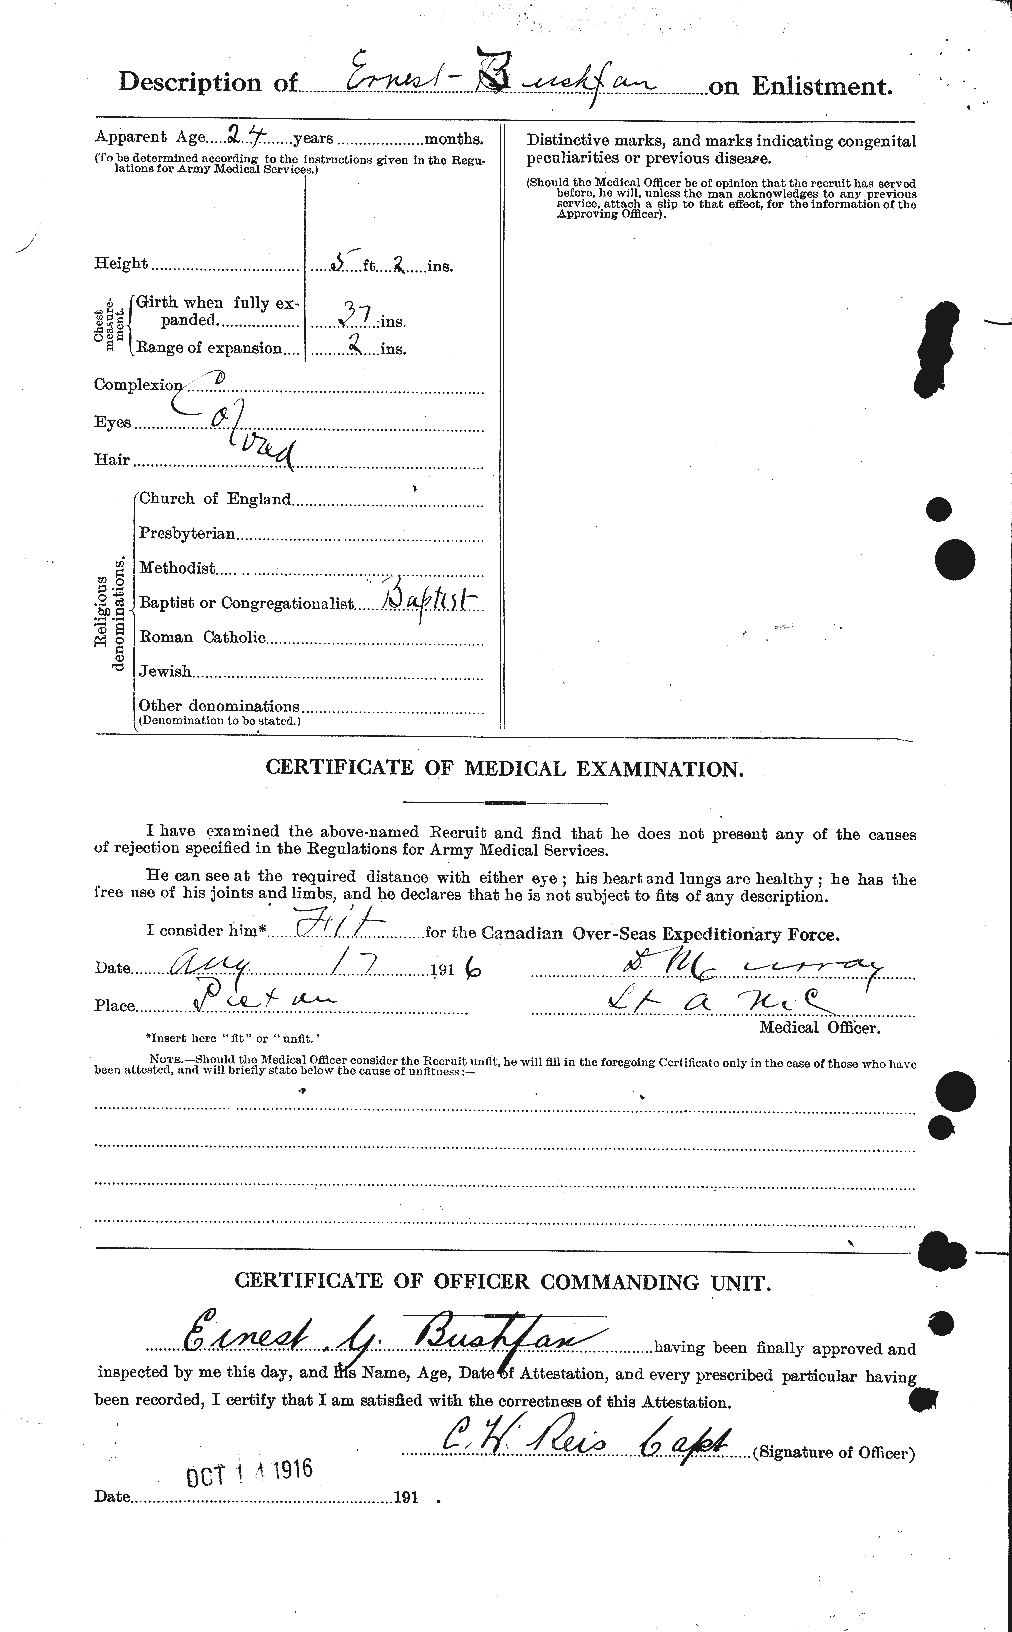 Dossiers du Personnel de la Première Guerre mondiale - CEC 274510b